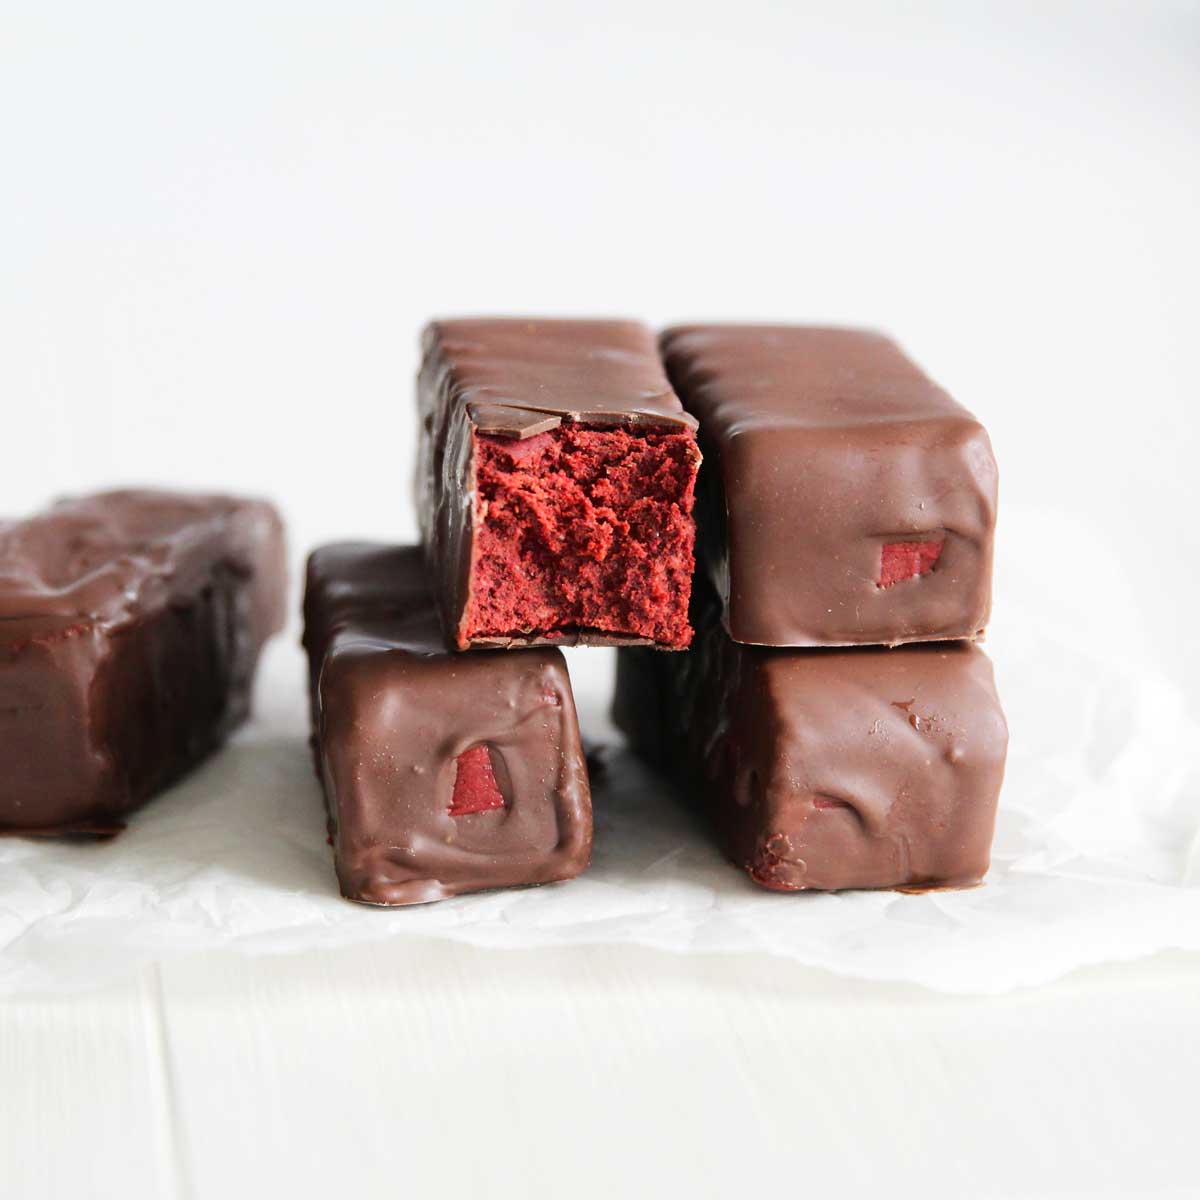 Gluten Free Red Velvet Cake Protein Bars (The Best Guilt-Free Dessert) - birthday cake protein bars